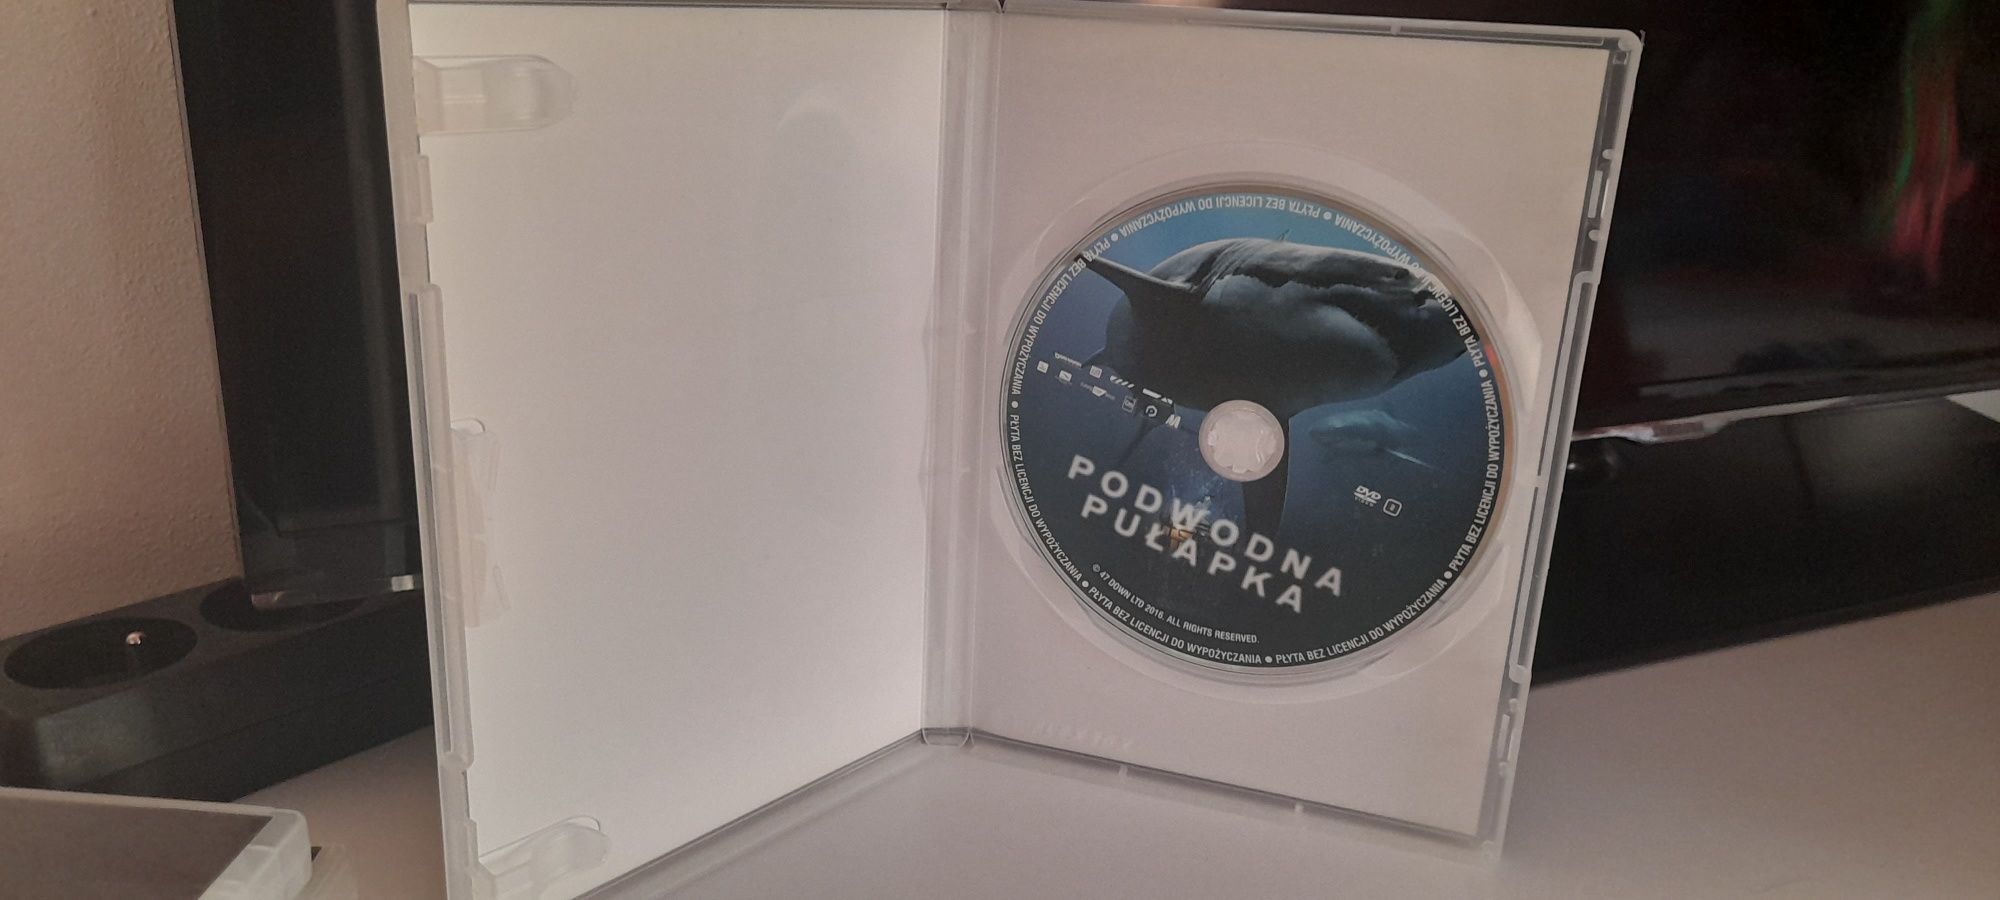 Film DVD ,,Podwodna Pułapka"